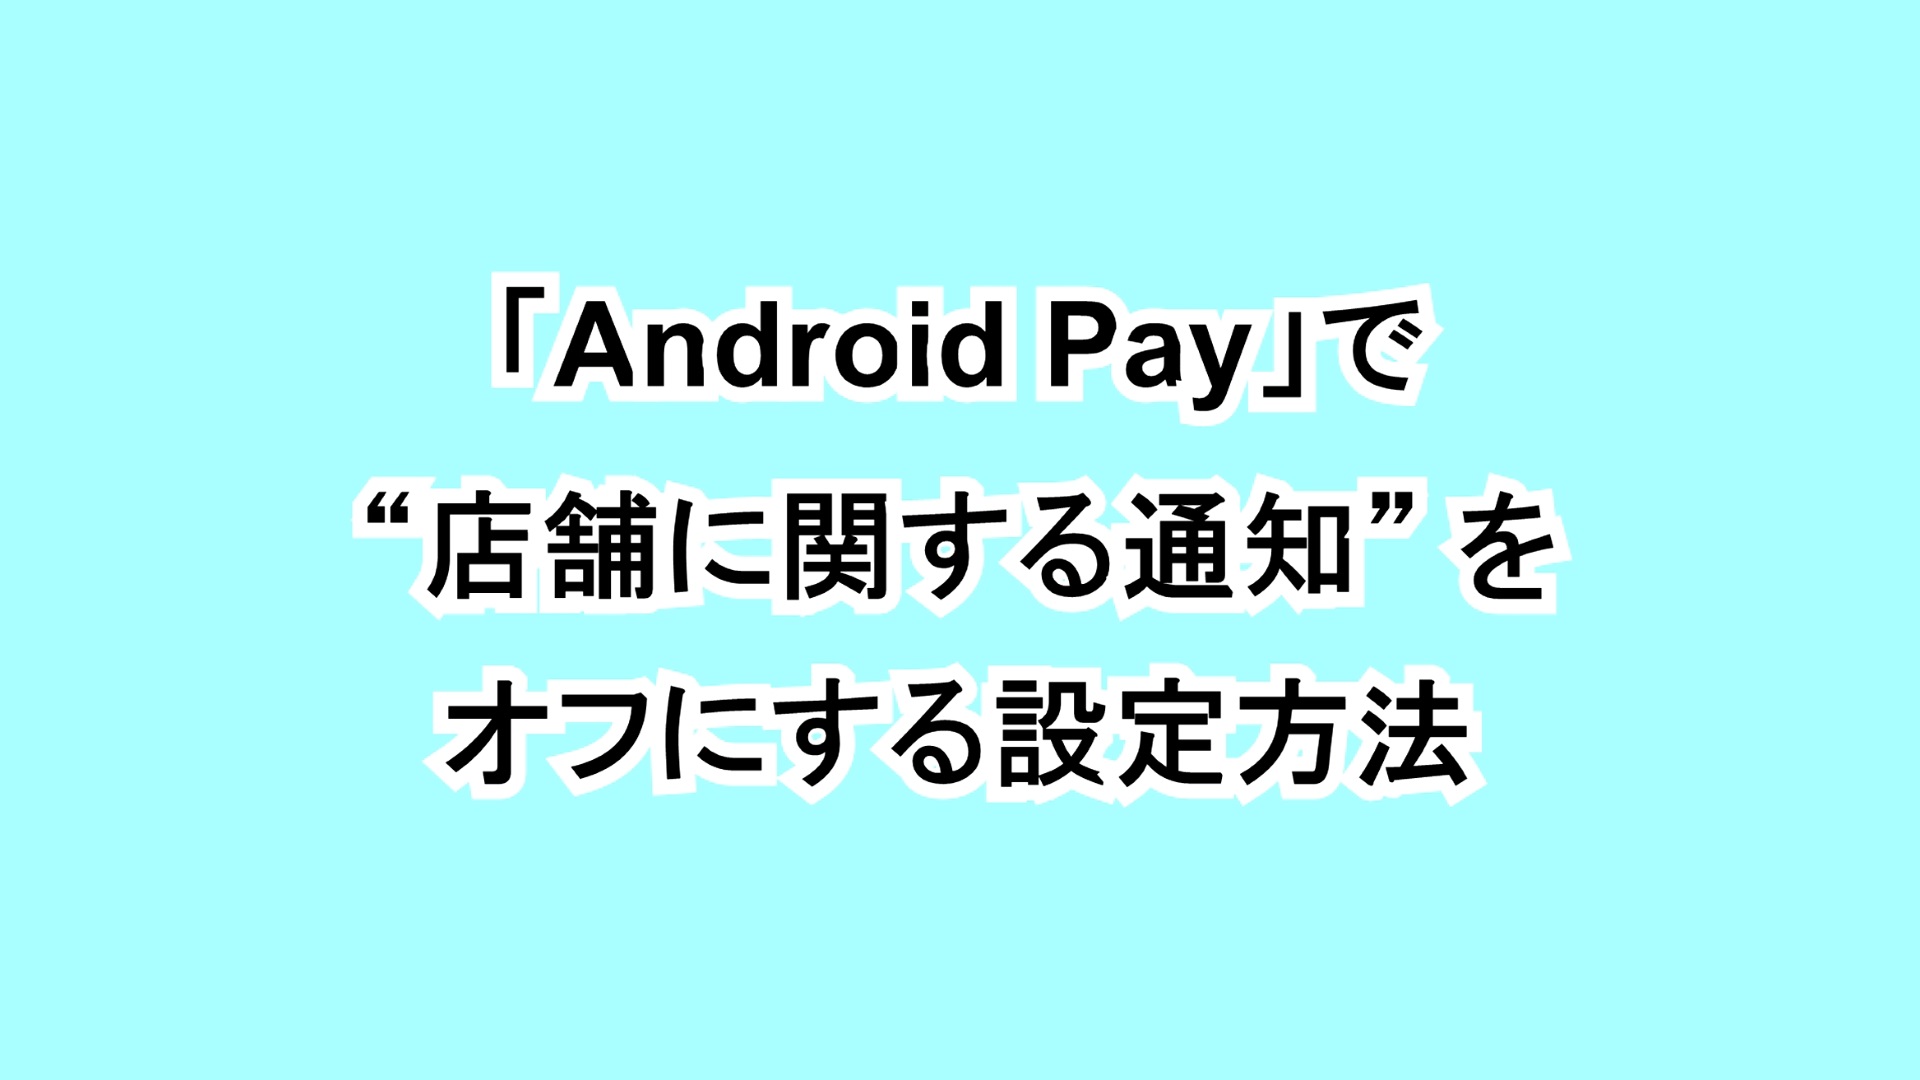 「Android Pay」で“店舗に関する通知”をオフにする設定方法